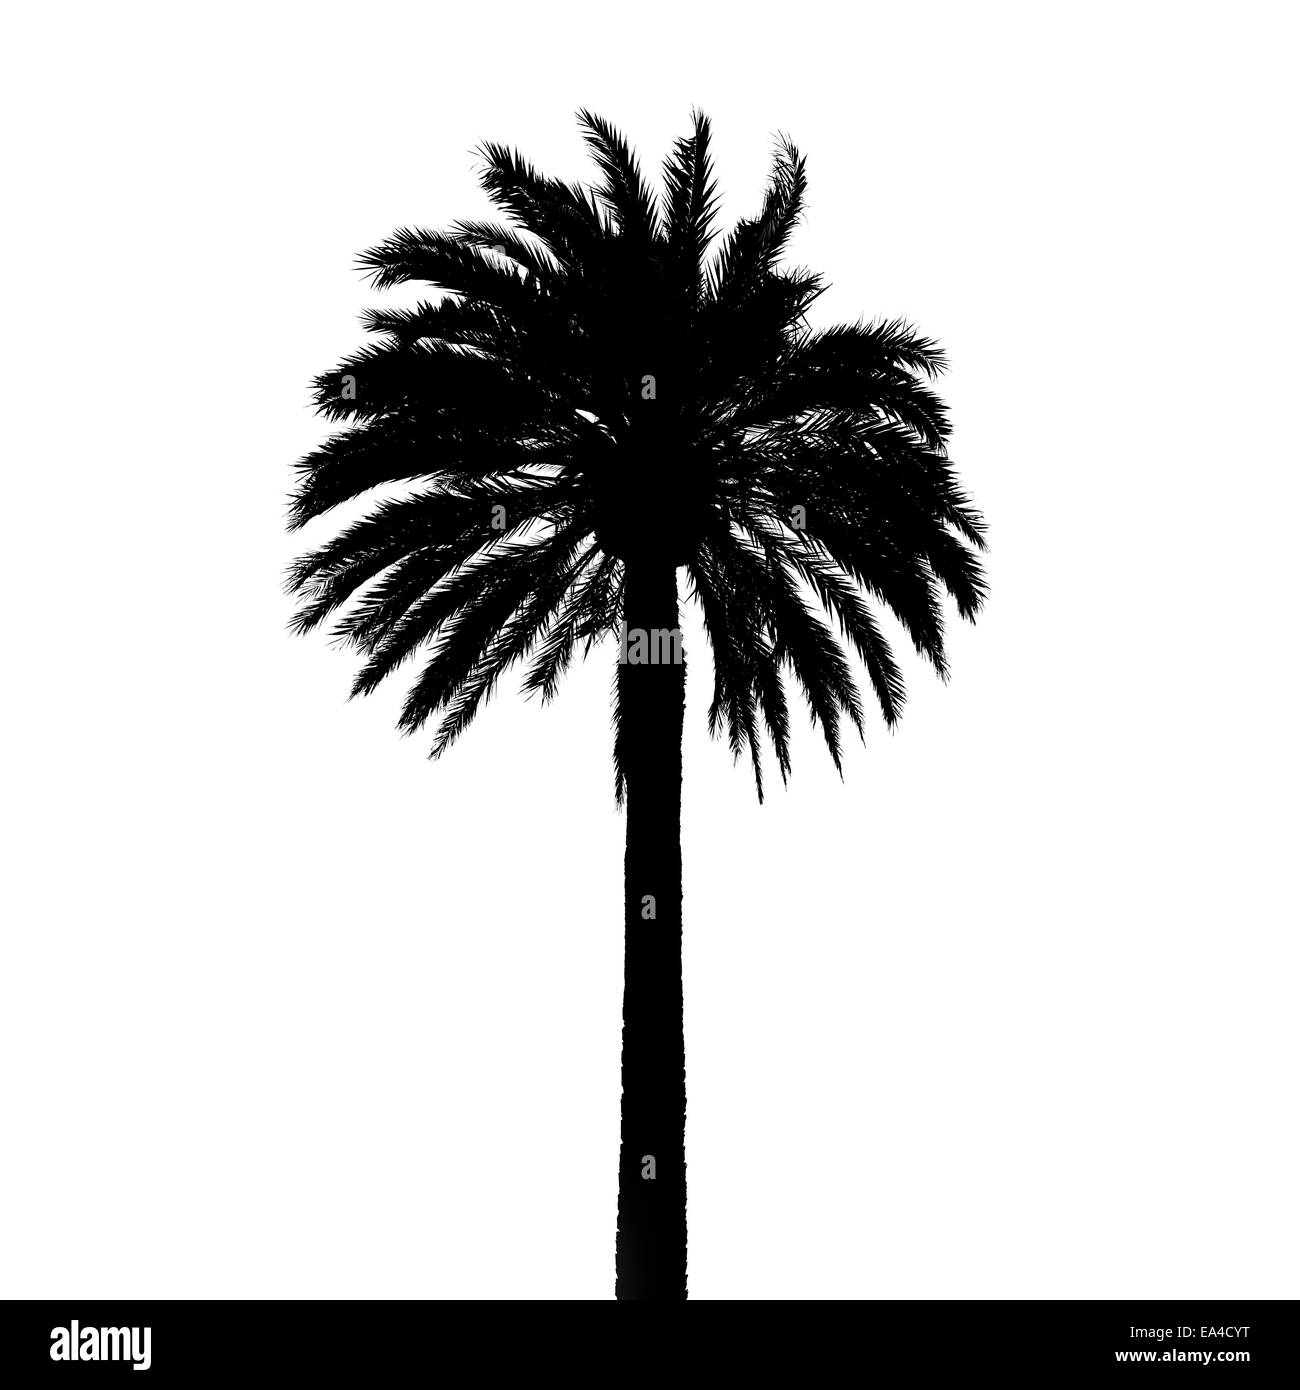 Schwarze Palme Baum Silhouette isoliert auf weißem Hintergrund, Detailfoto Textur Stockfoto